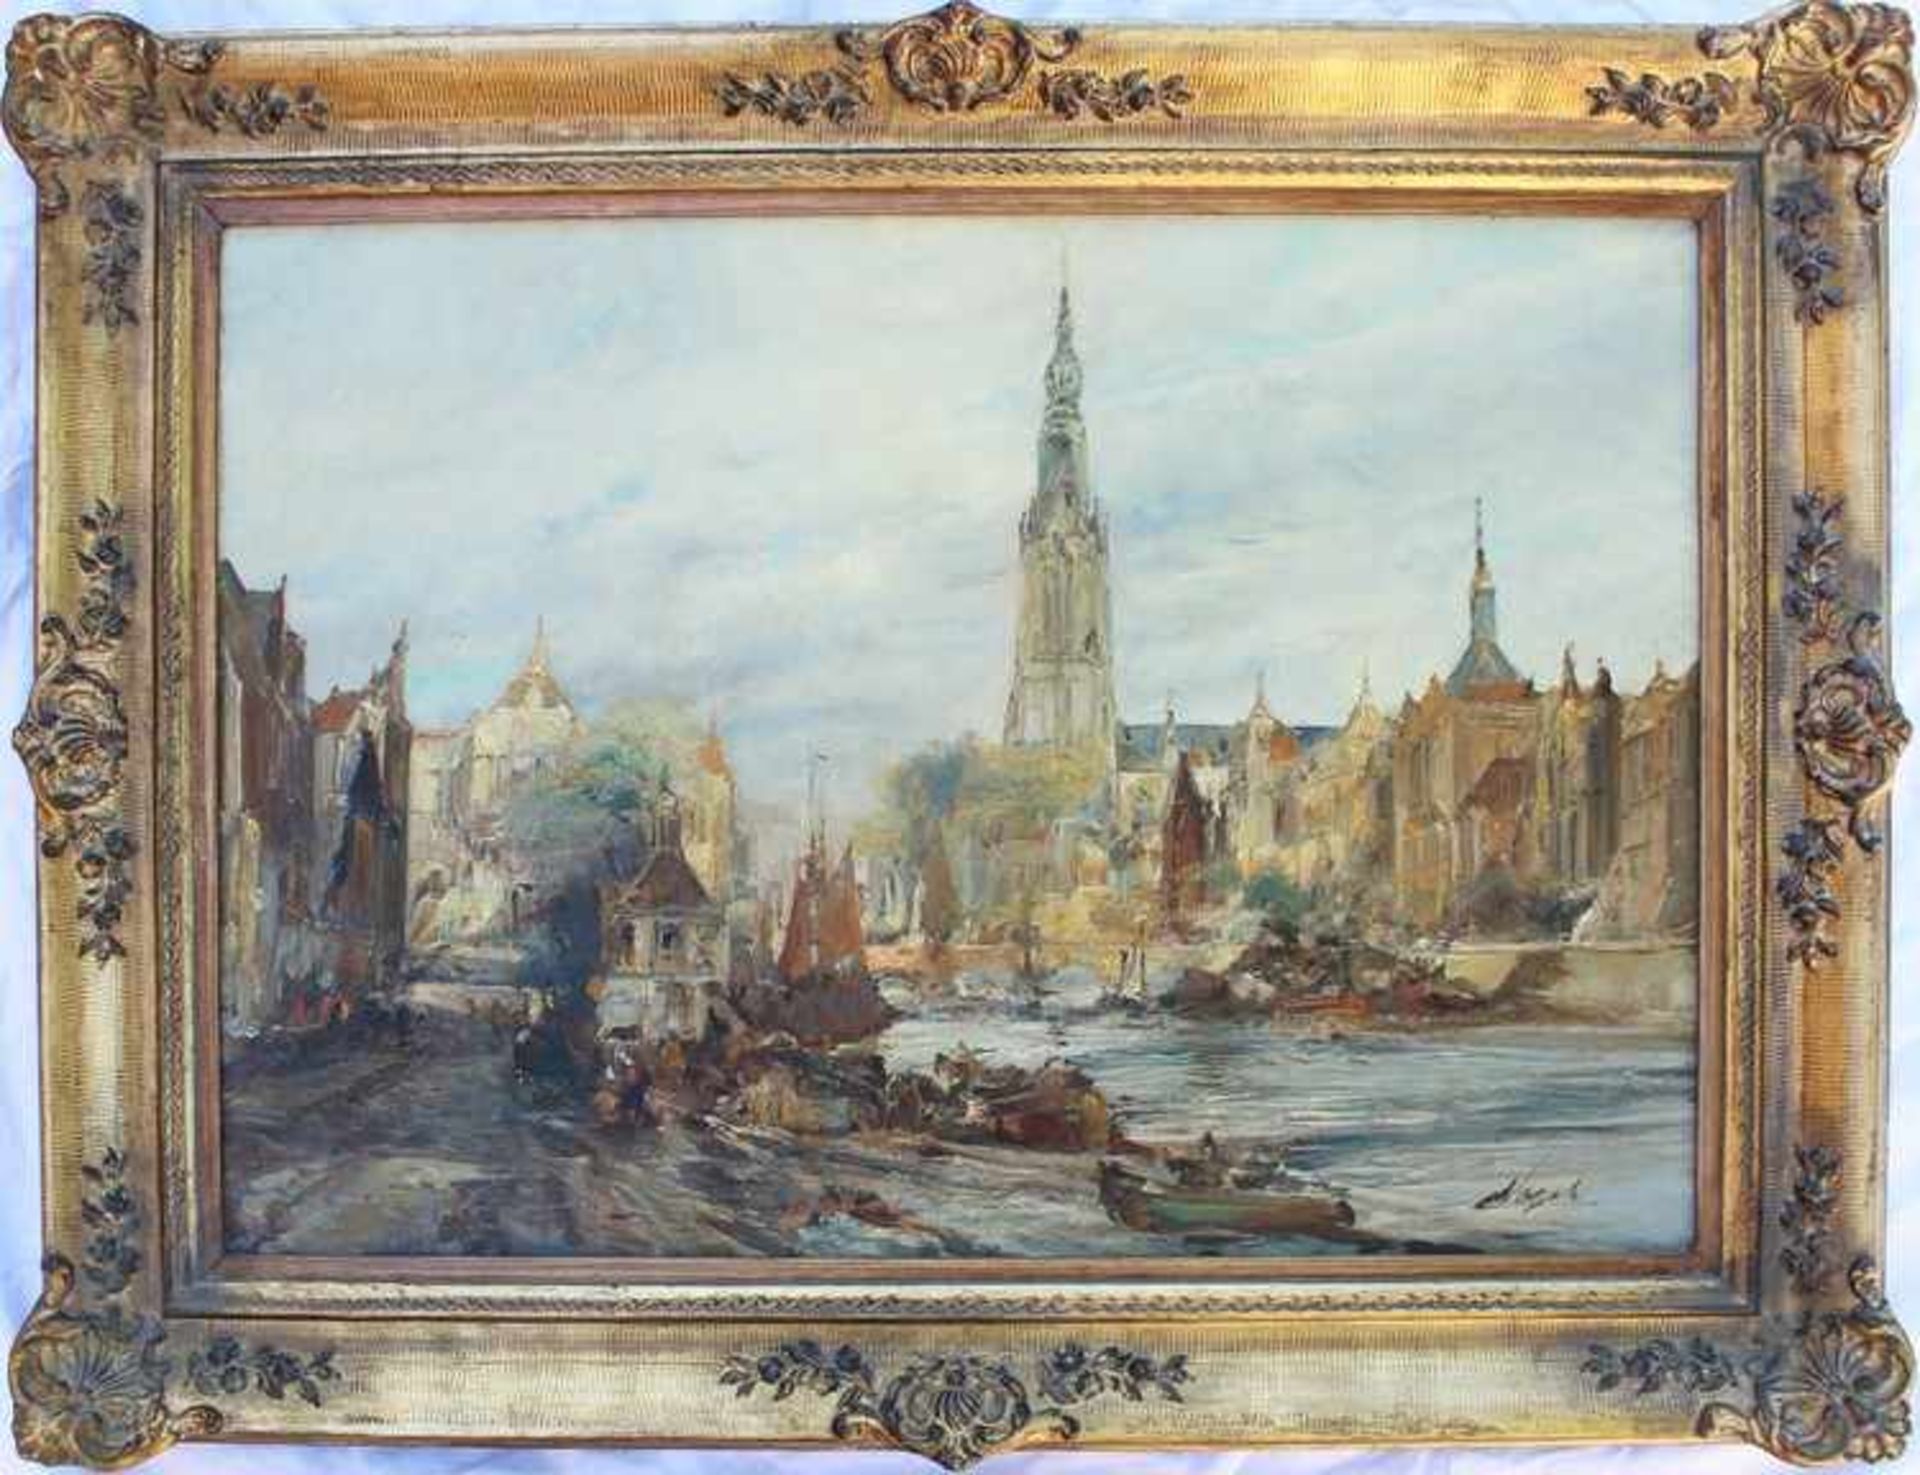 Vogel, M.um 1920, "Großstadt am Gewässer mit Kirchturm, Brücke und Booten", Öl/Lwd., pastelltonige